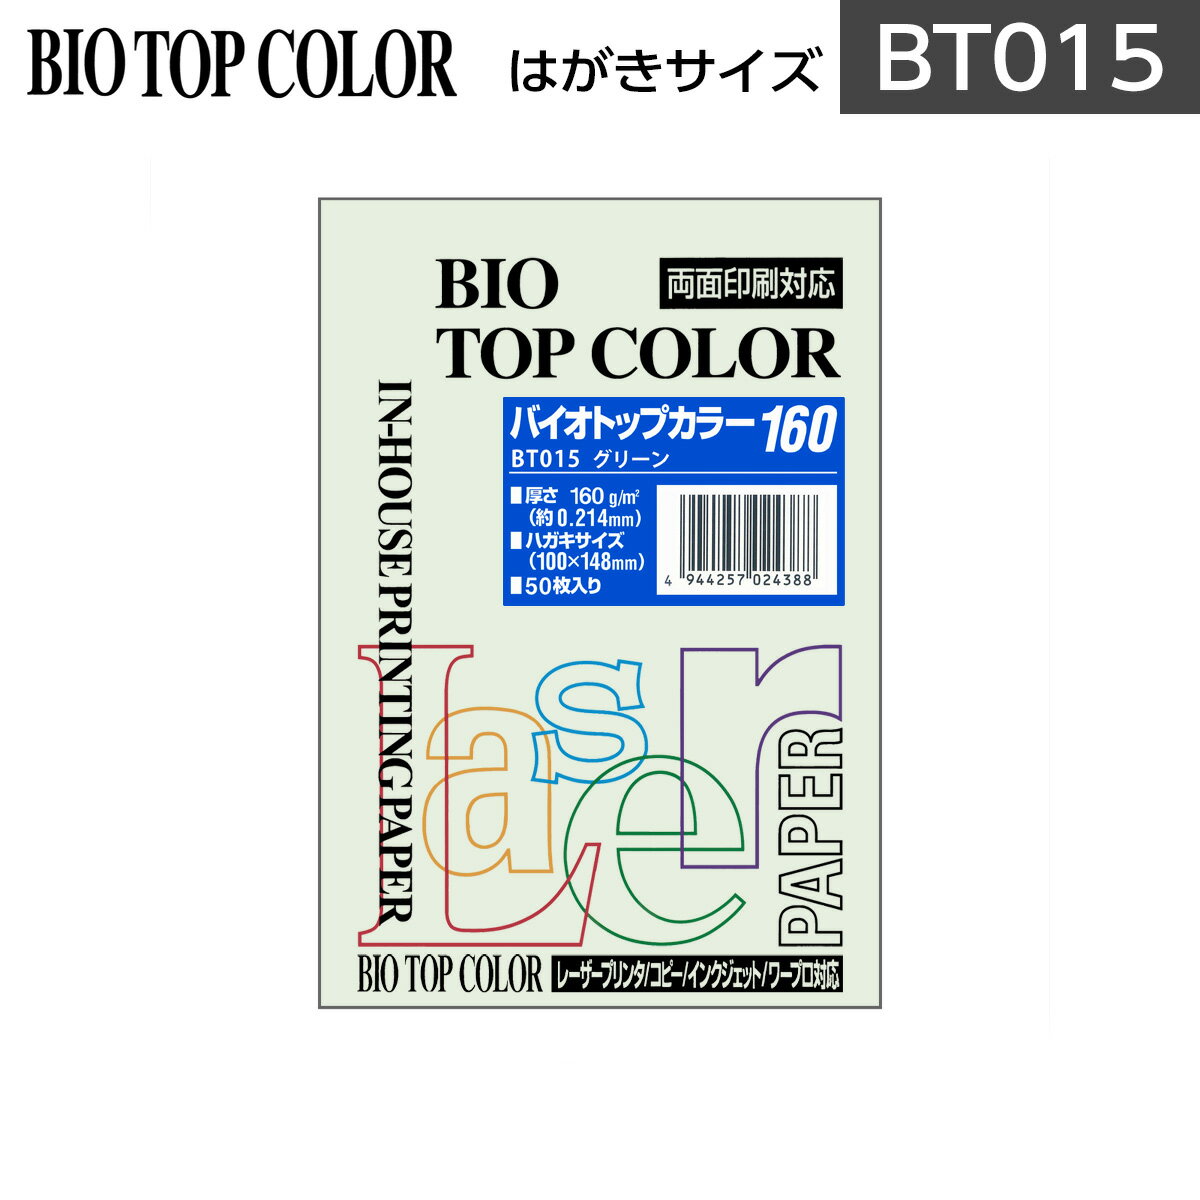 伊東屋 バイオトップカラー BT015グリーン はがきサイズ 160g/m2 50枚入りItoya mondi BIO TOP COLOR